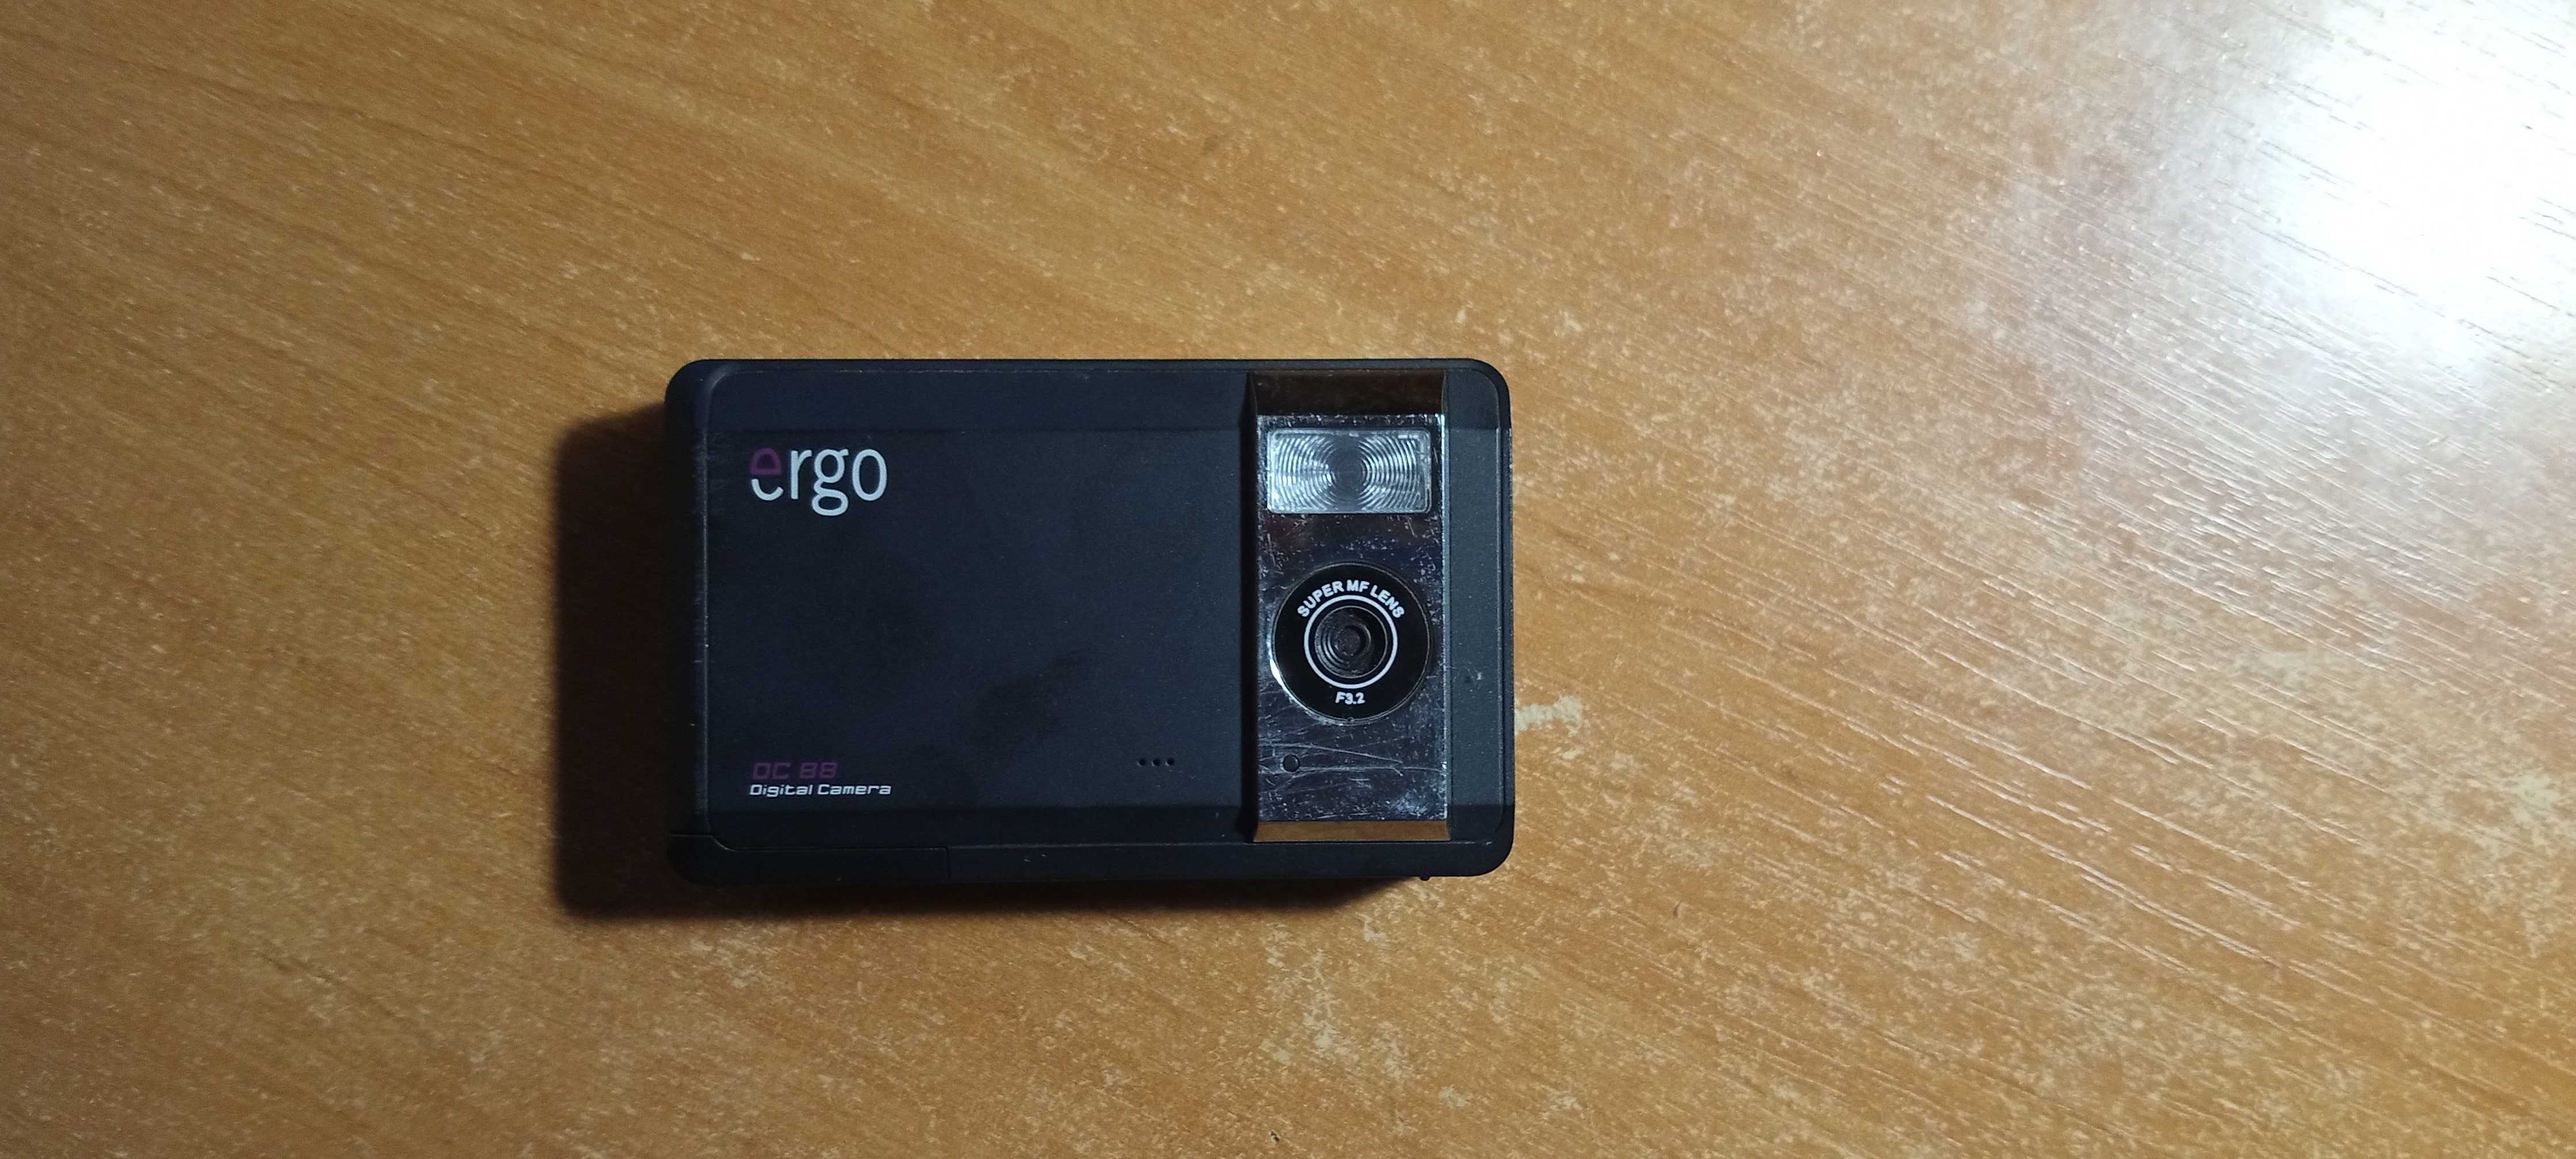 Продам фотоапарат Ergo DC 88